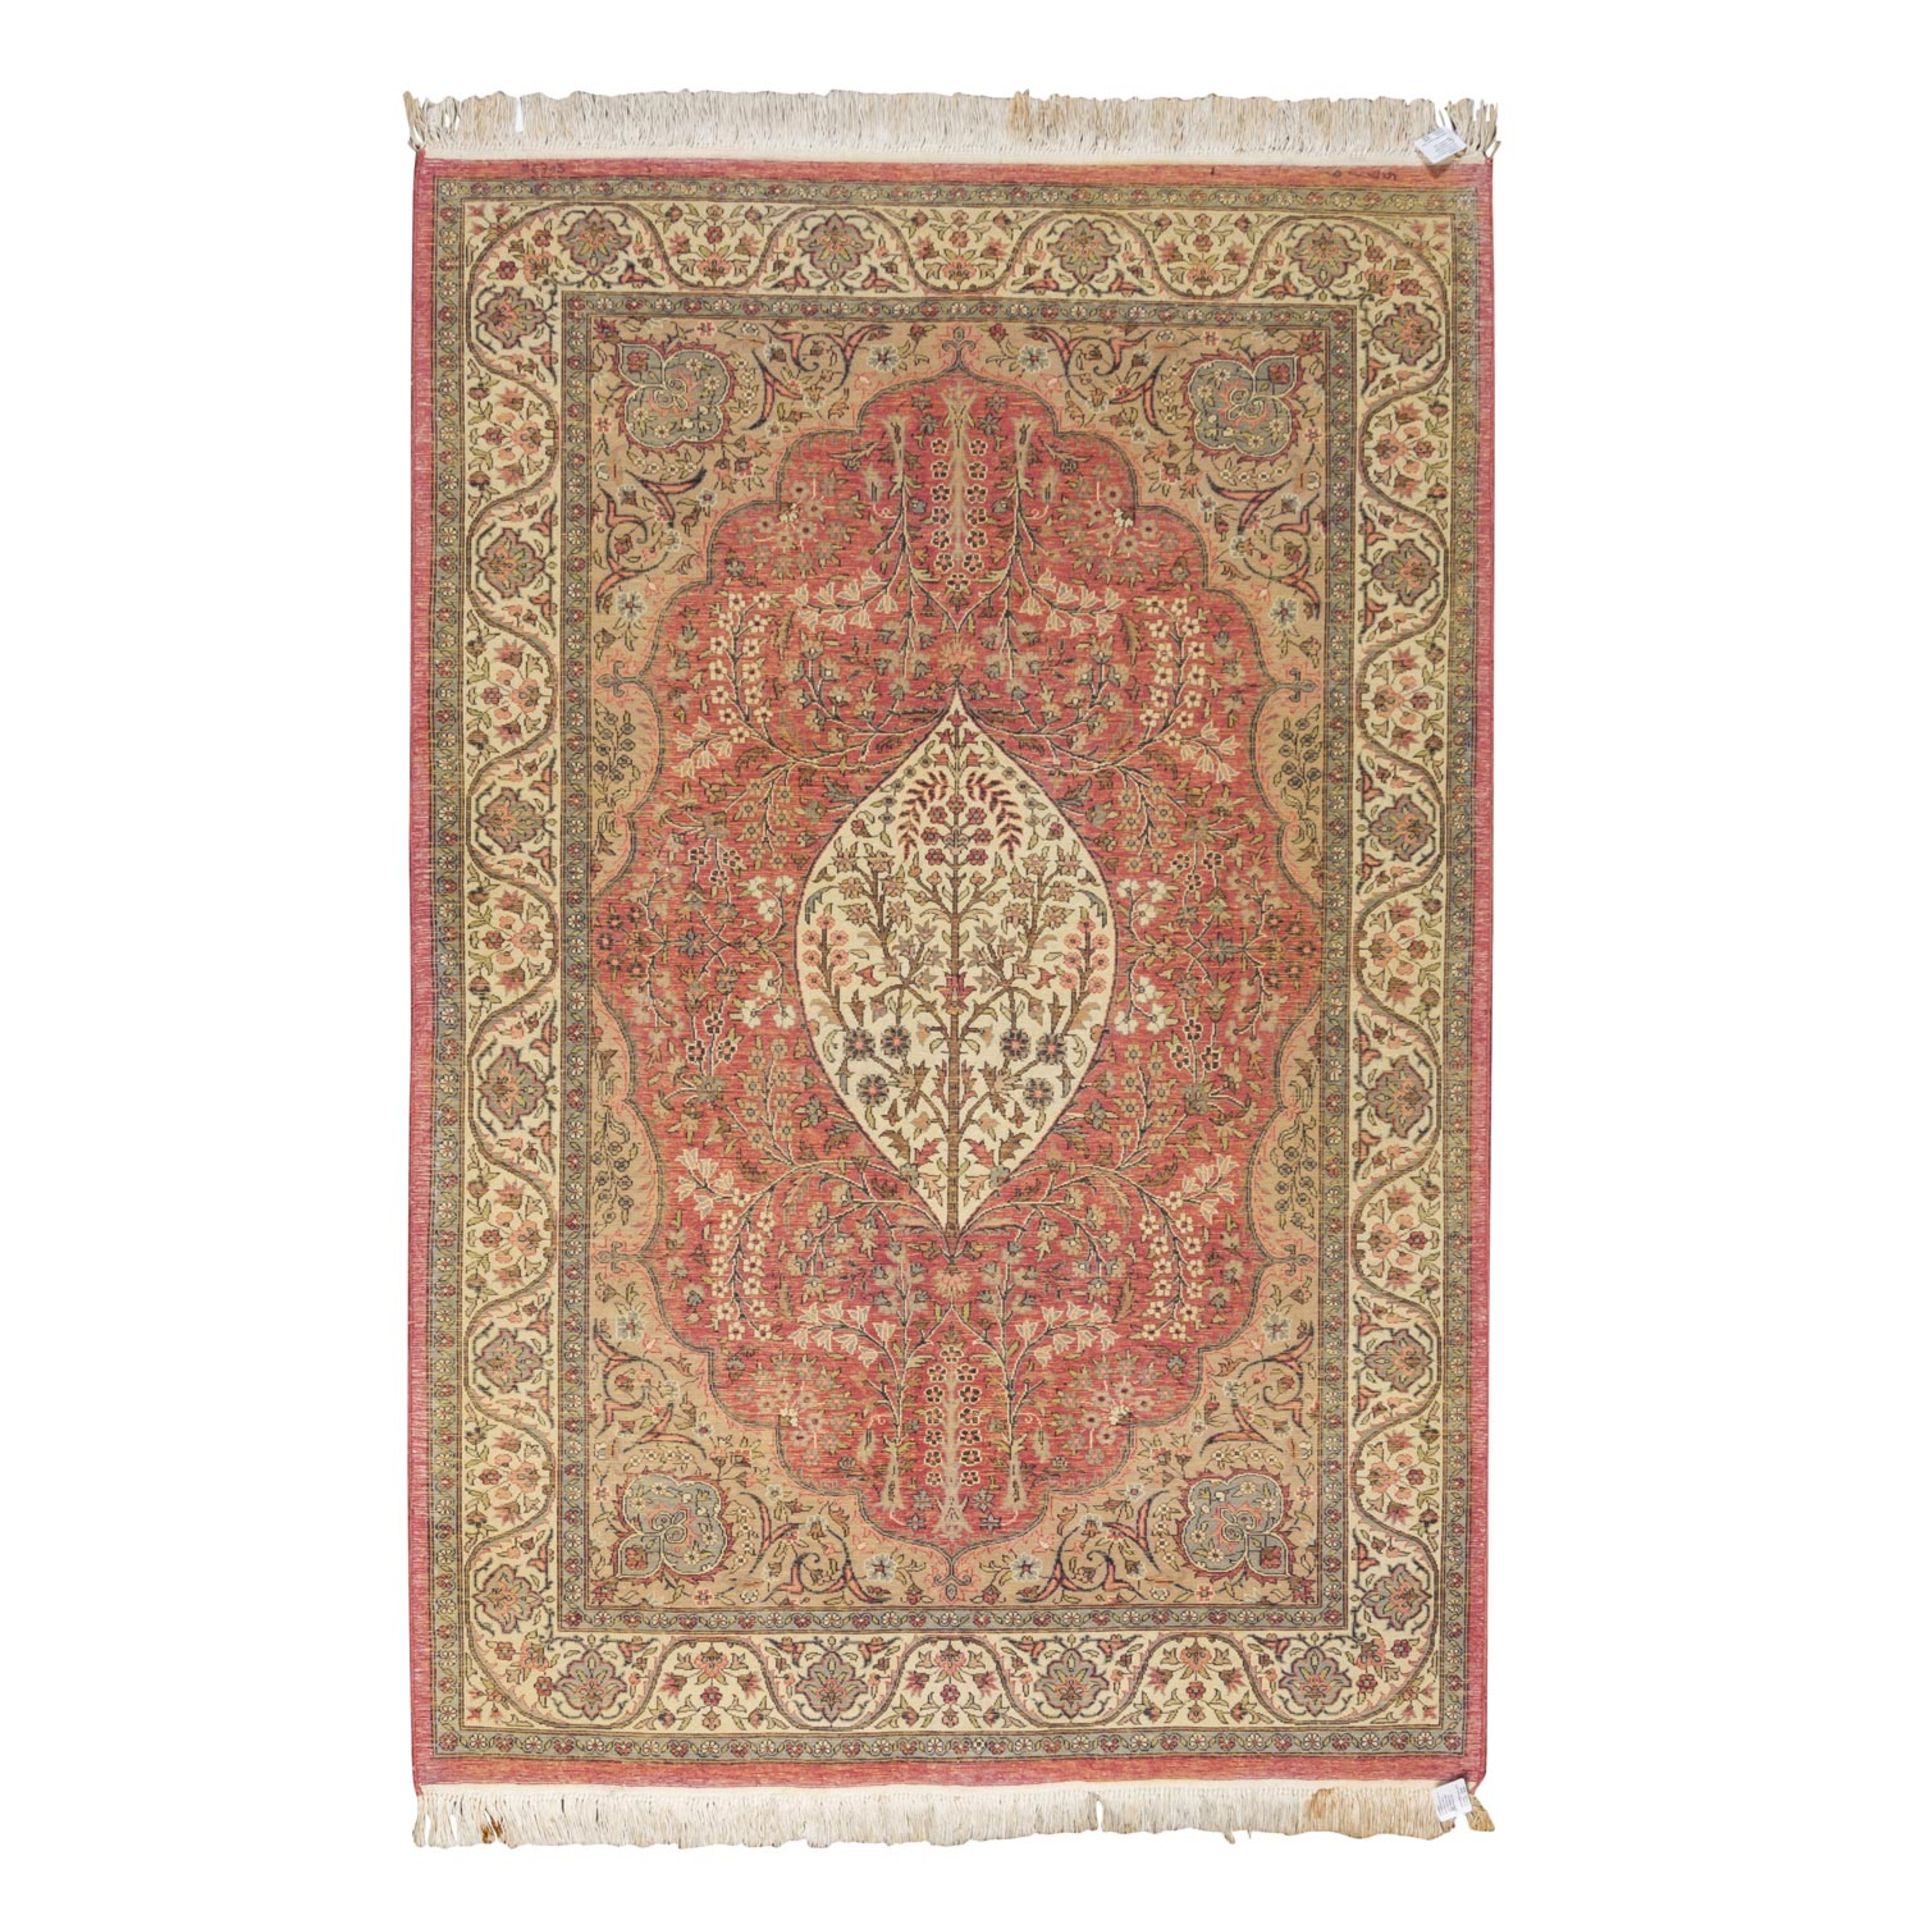 Orientteppich. LAHORE/PAKISTAN, 20. Jh., 189x128 cm. - Image 2 of 6